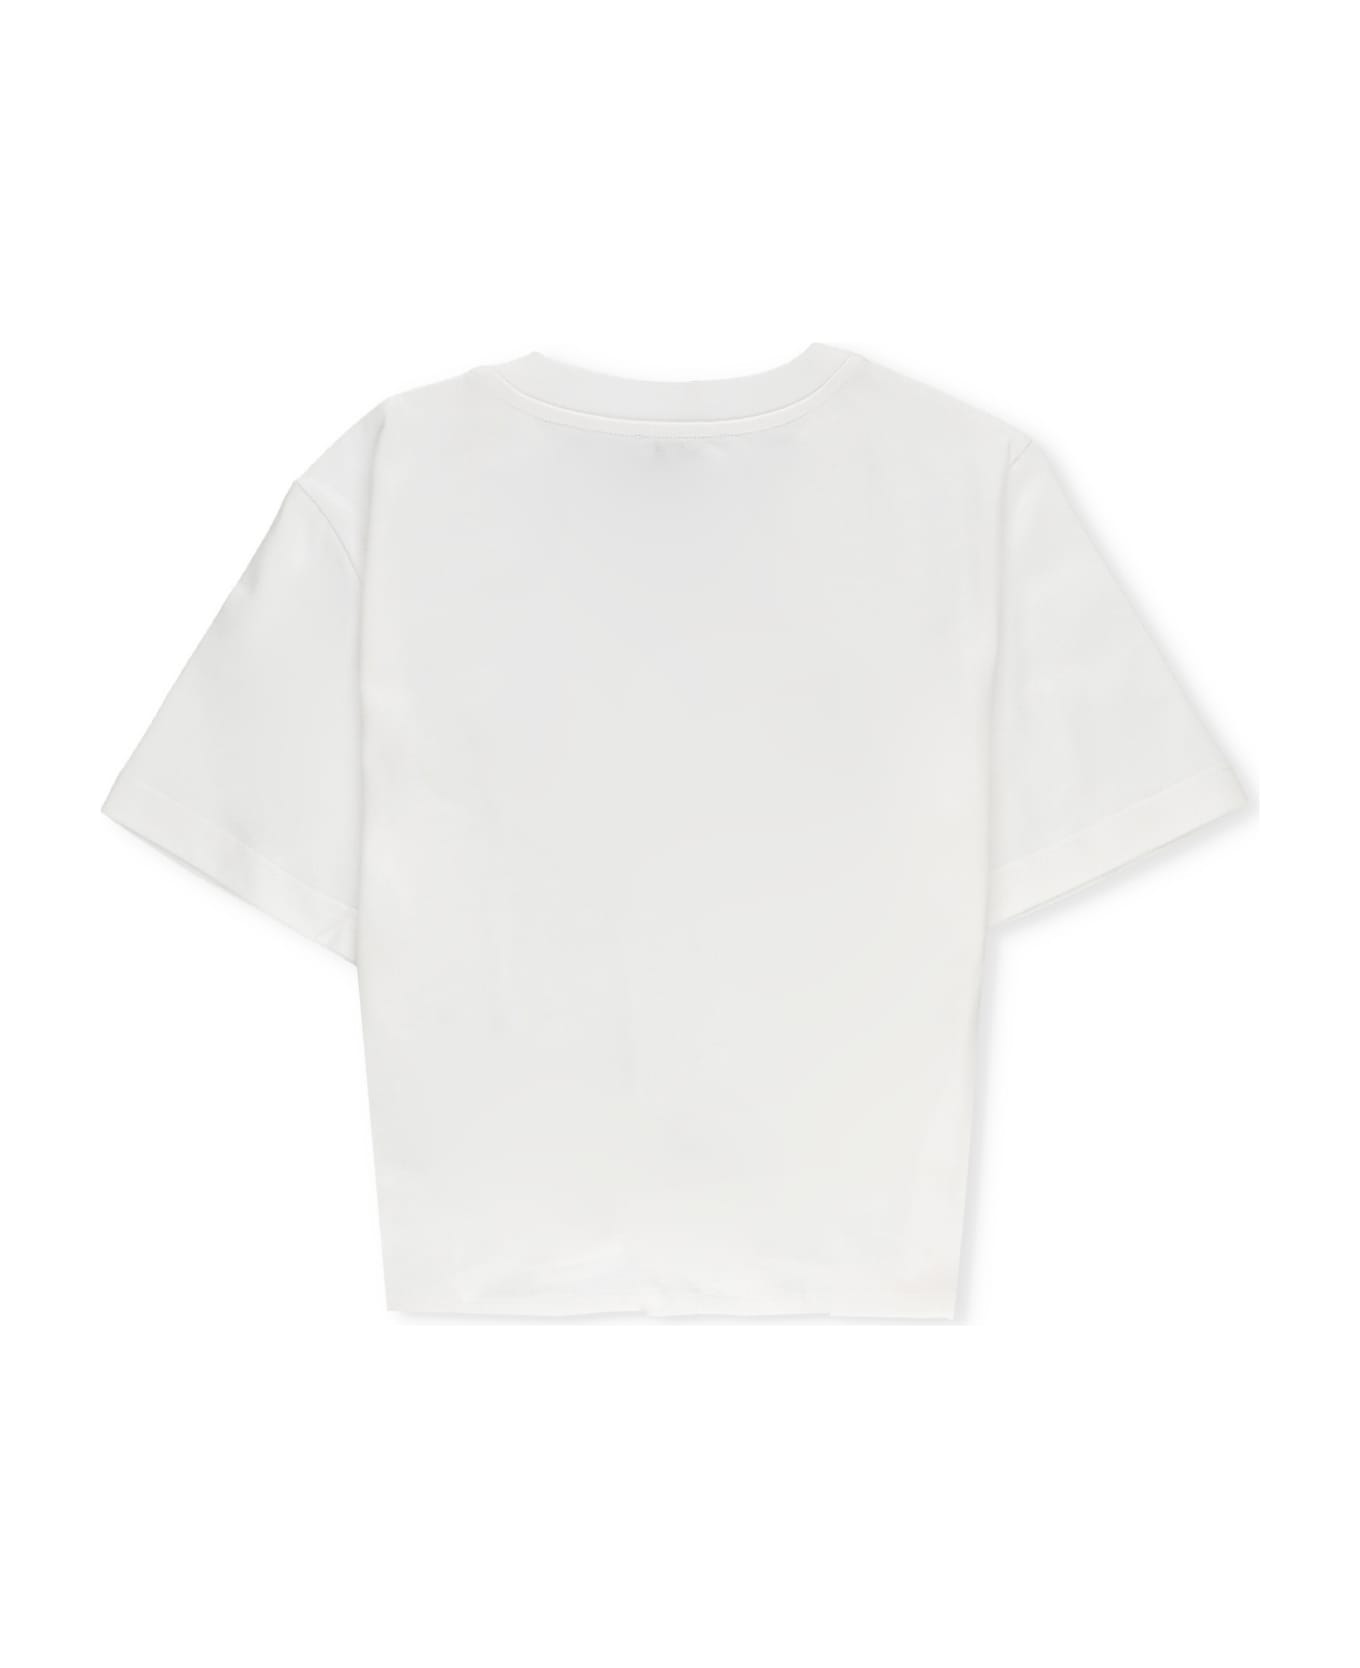 Dolce & Gabbana T-shirt With Logo - Bianco